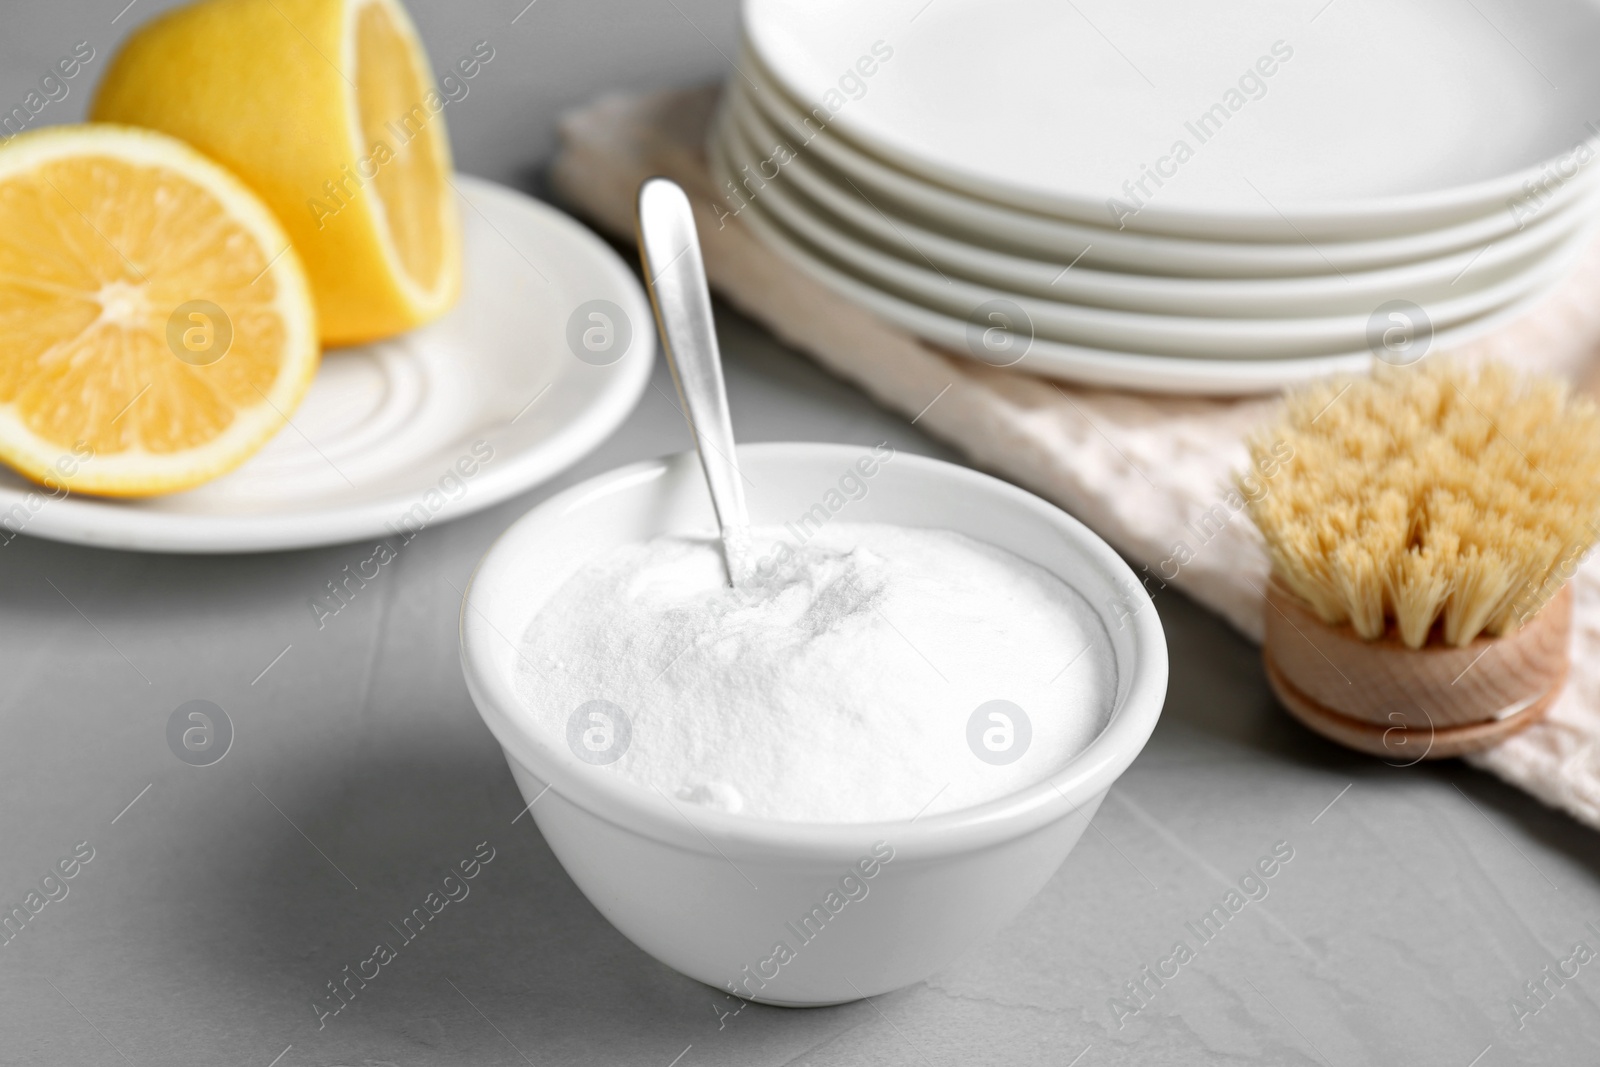 Photo of Bowl of baking soda, brush and lemon on light grey table